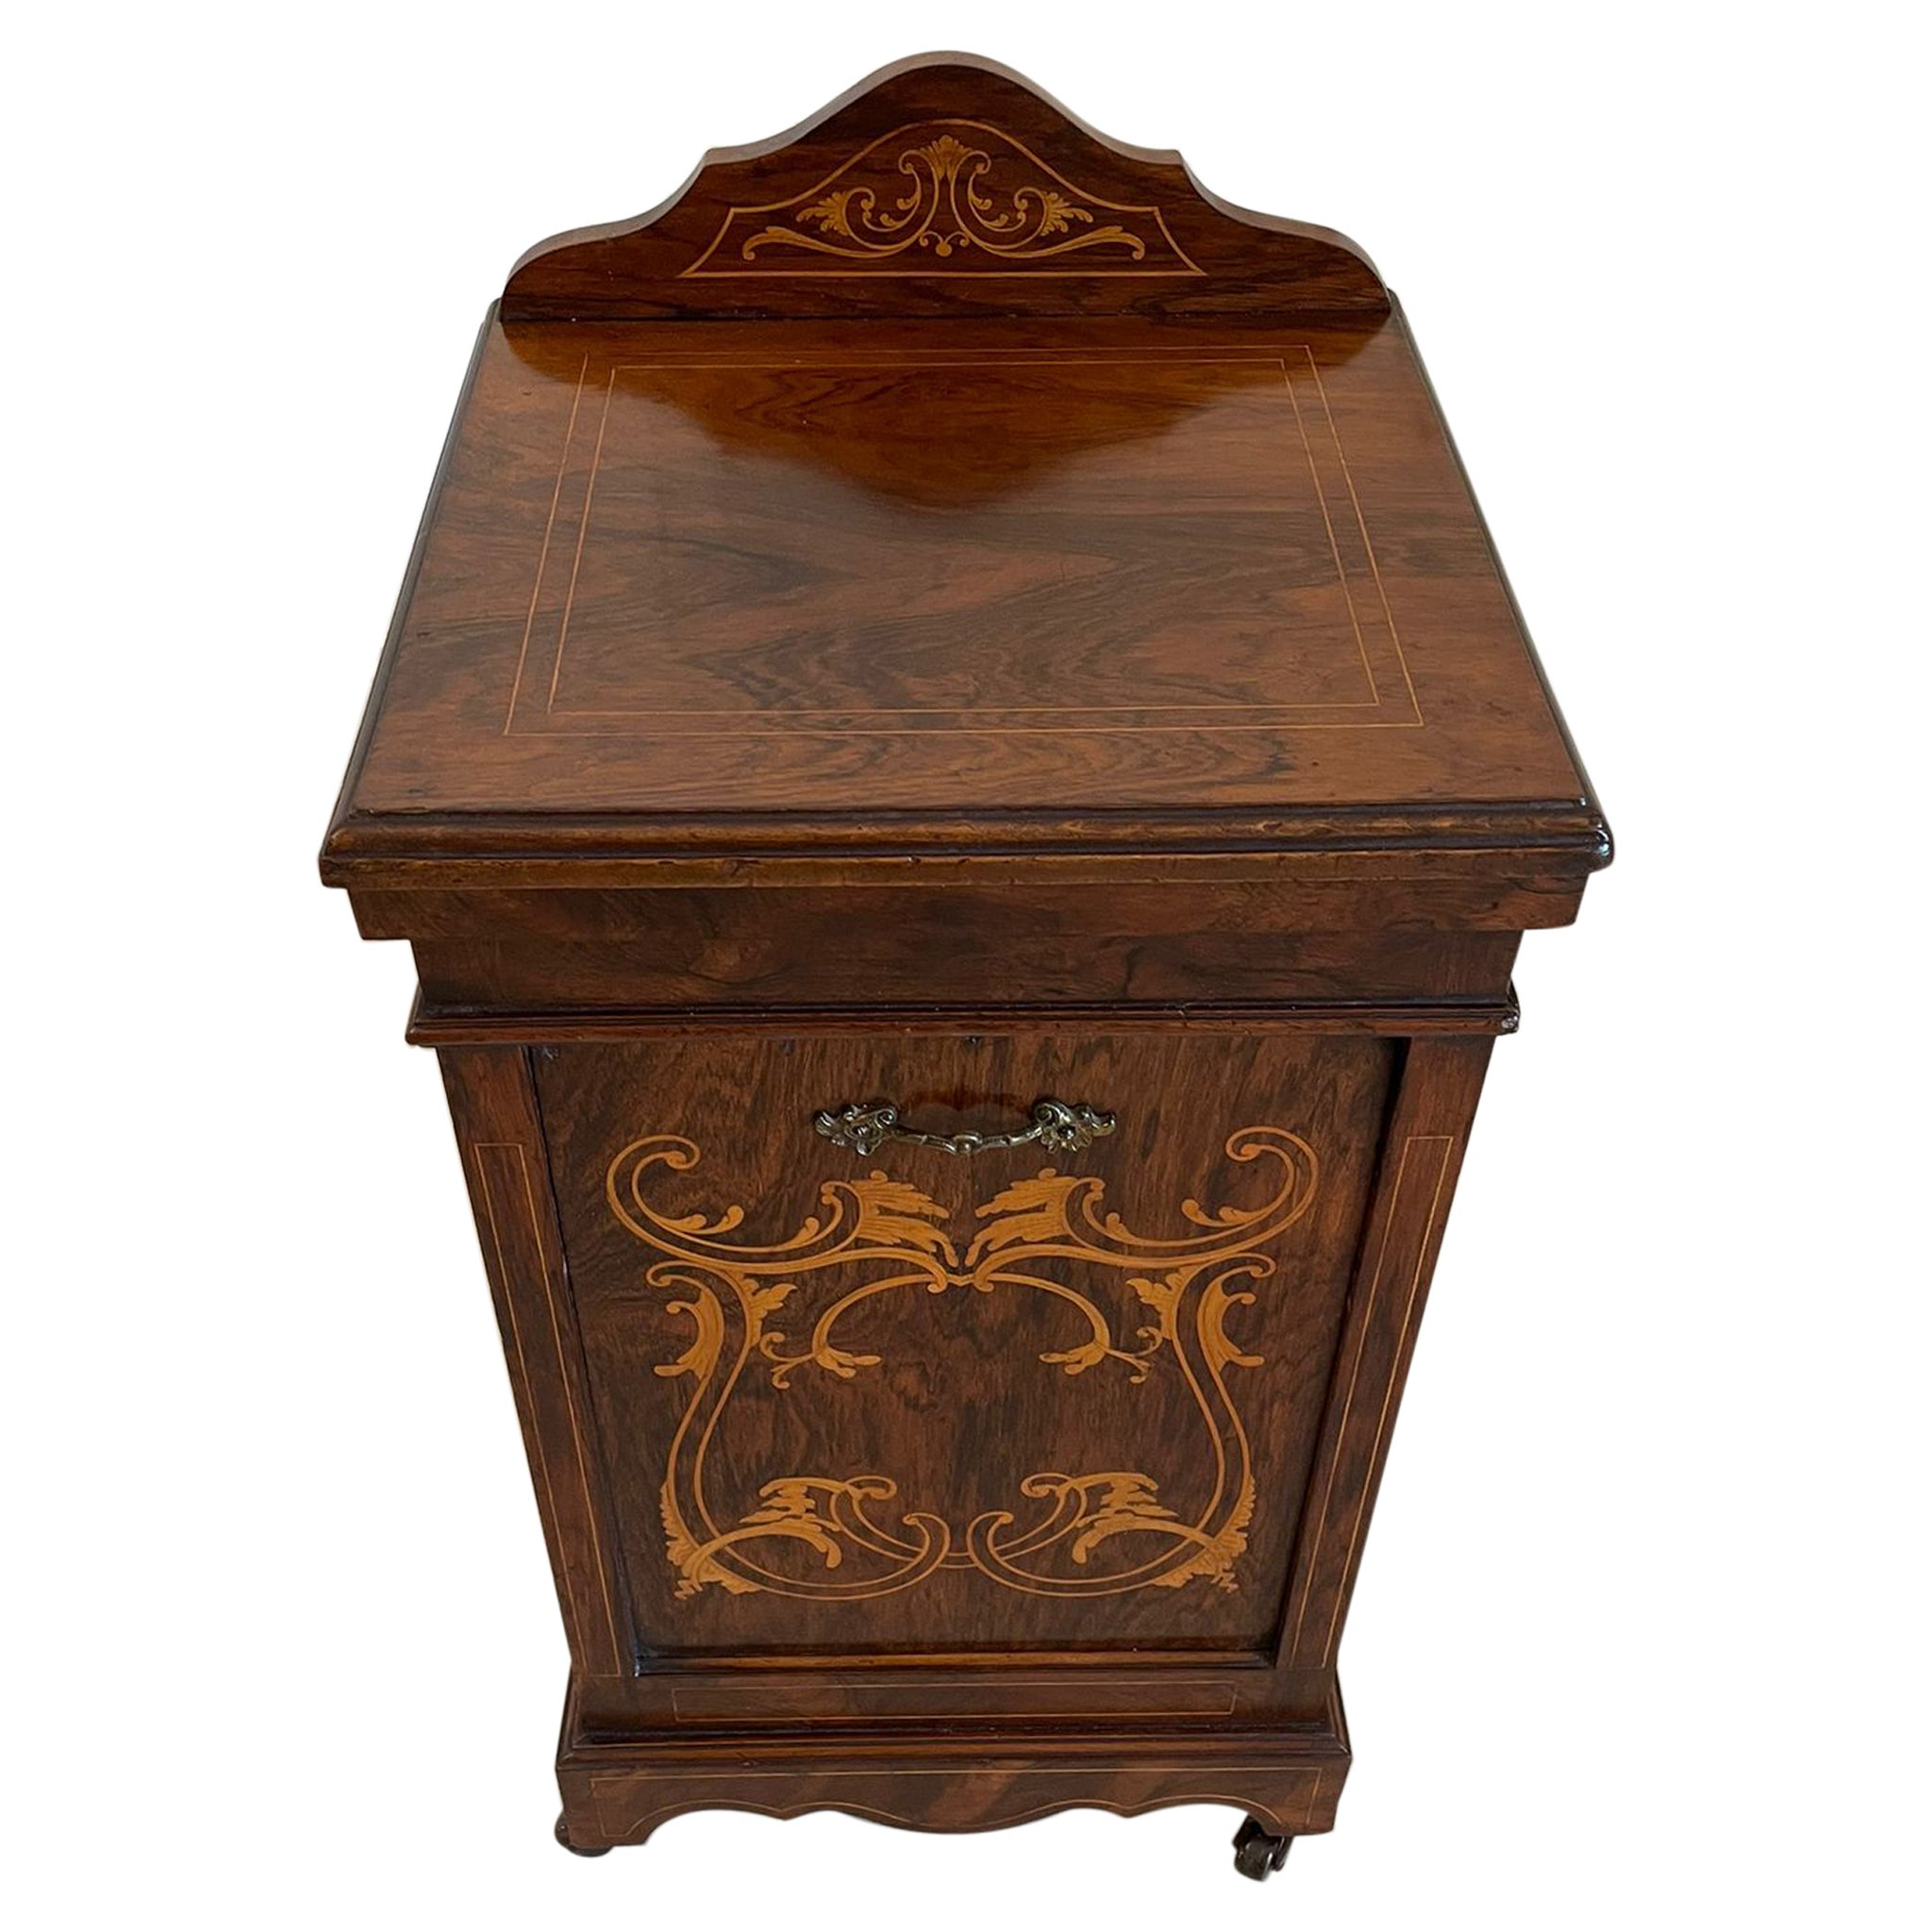 Ancienne armoire édouardienne autoportante en bois de rose incrusté de qualité, de style édouardien